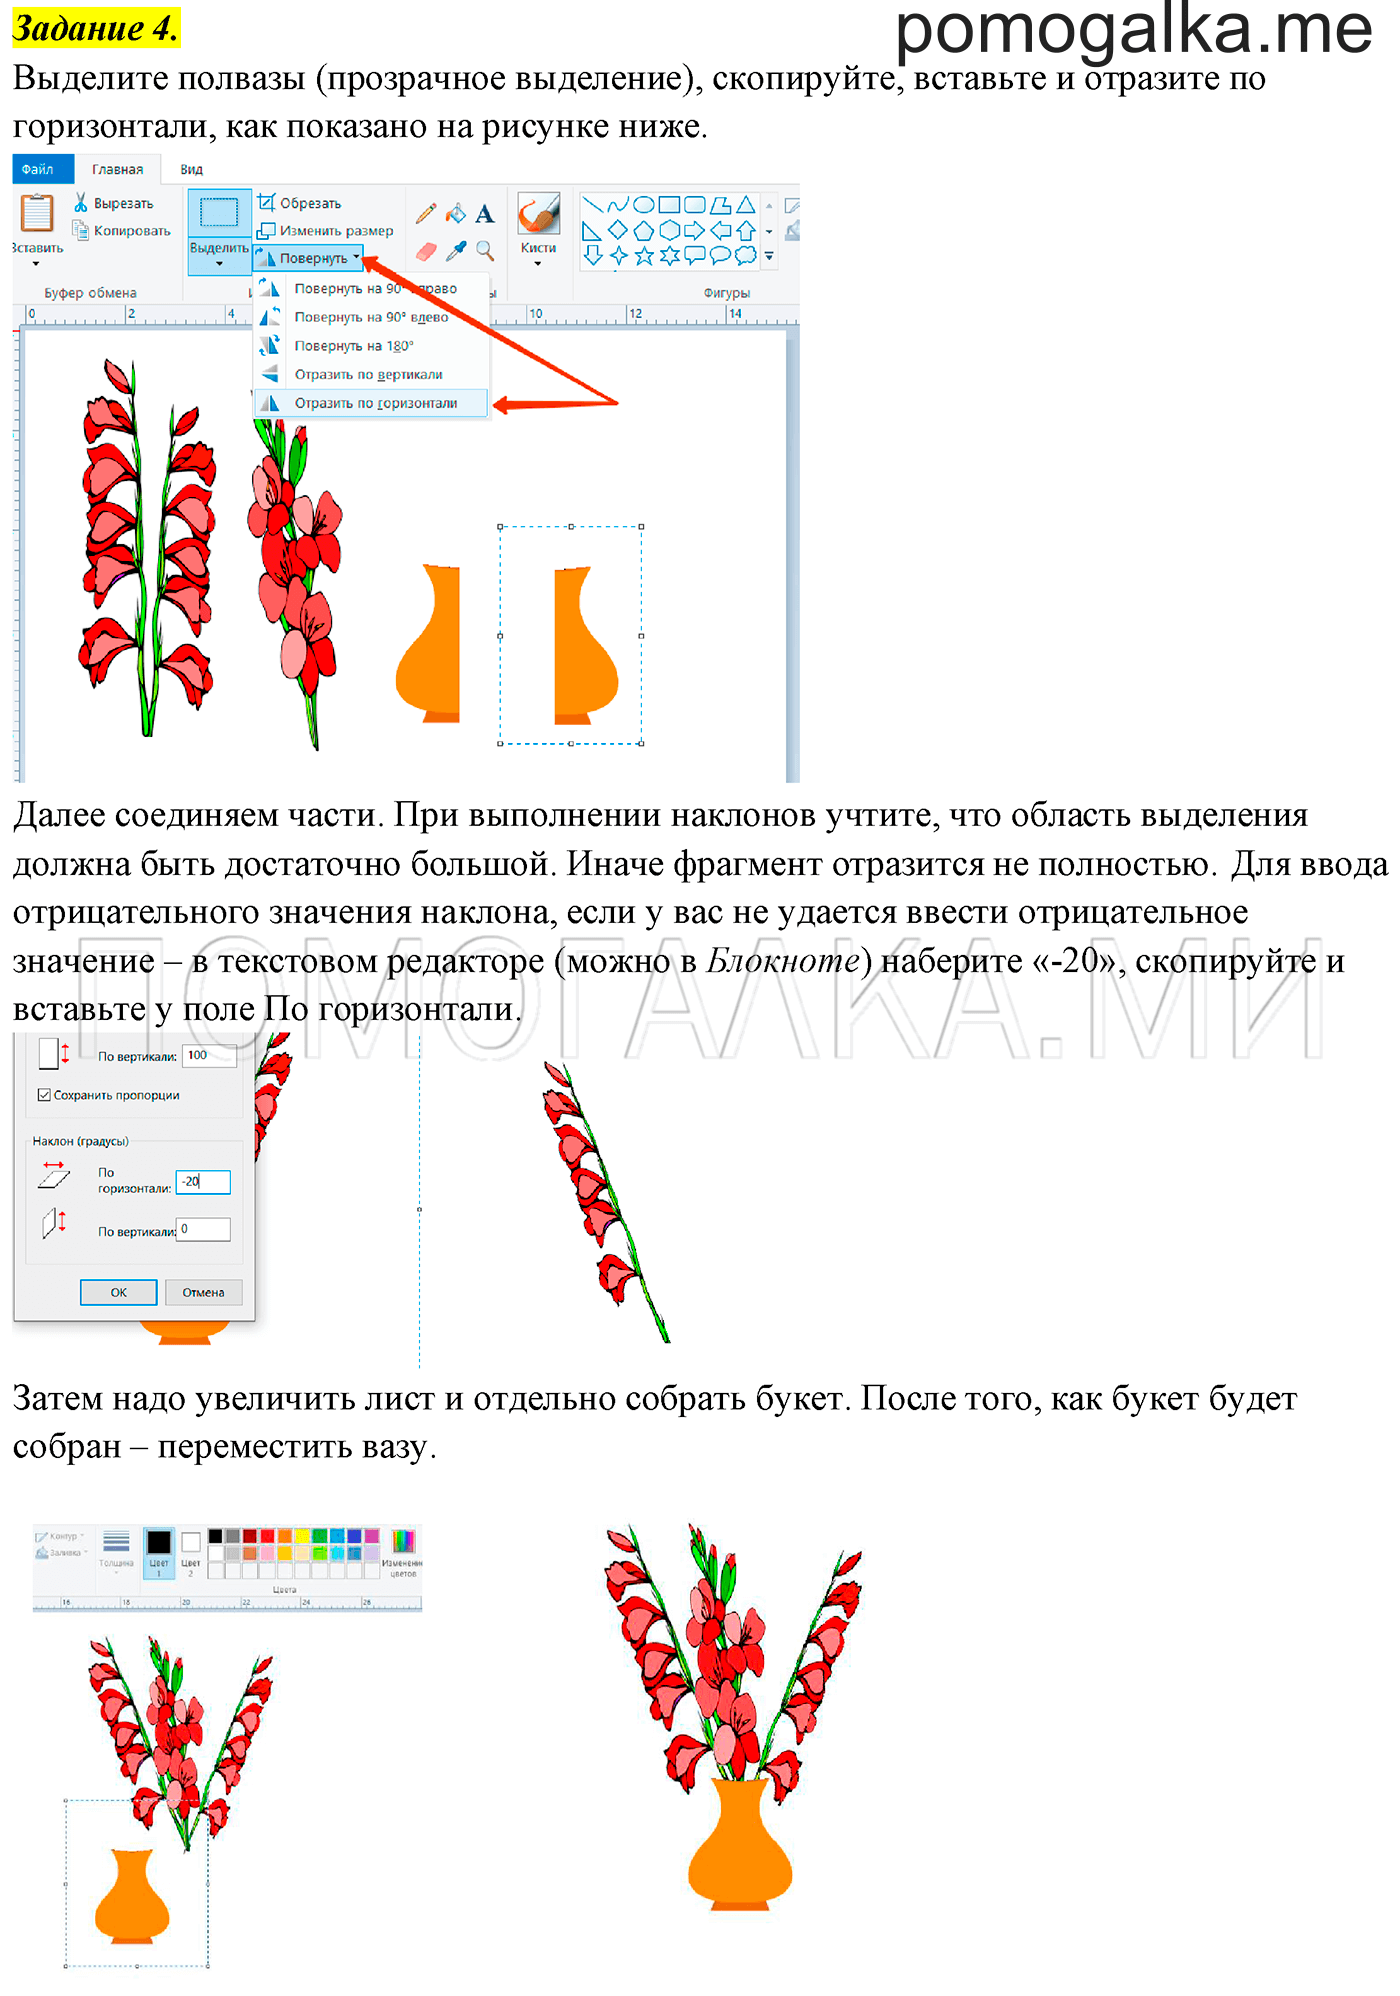 Информатика 5 компьютерный практикум. Как сделать цветок по информатике 5 класс. Компьютерный практикум типы границ. Графические шаблоны для компьютерного практикума 5 класс. Информатика задачи для компьютерного практикума кузнечик.